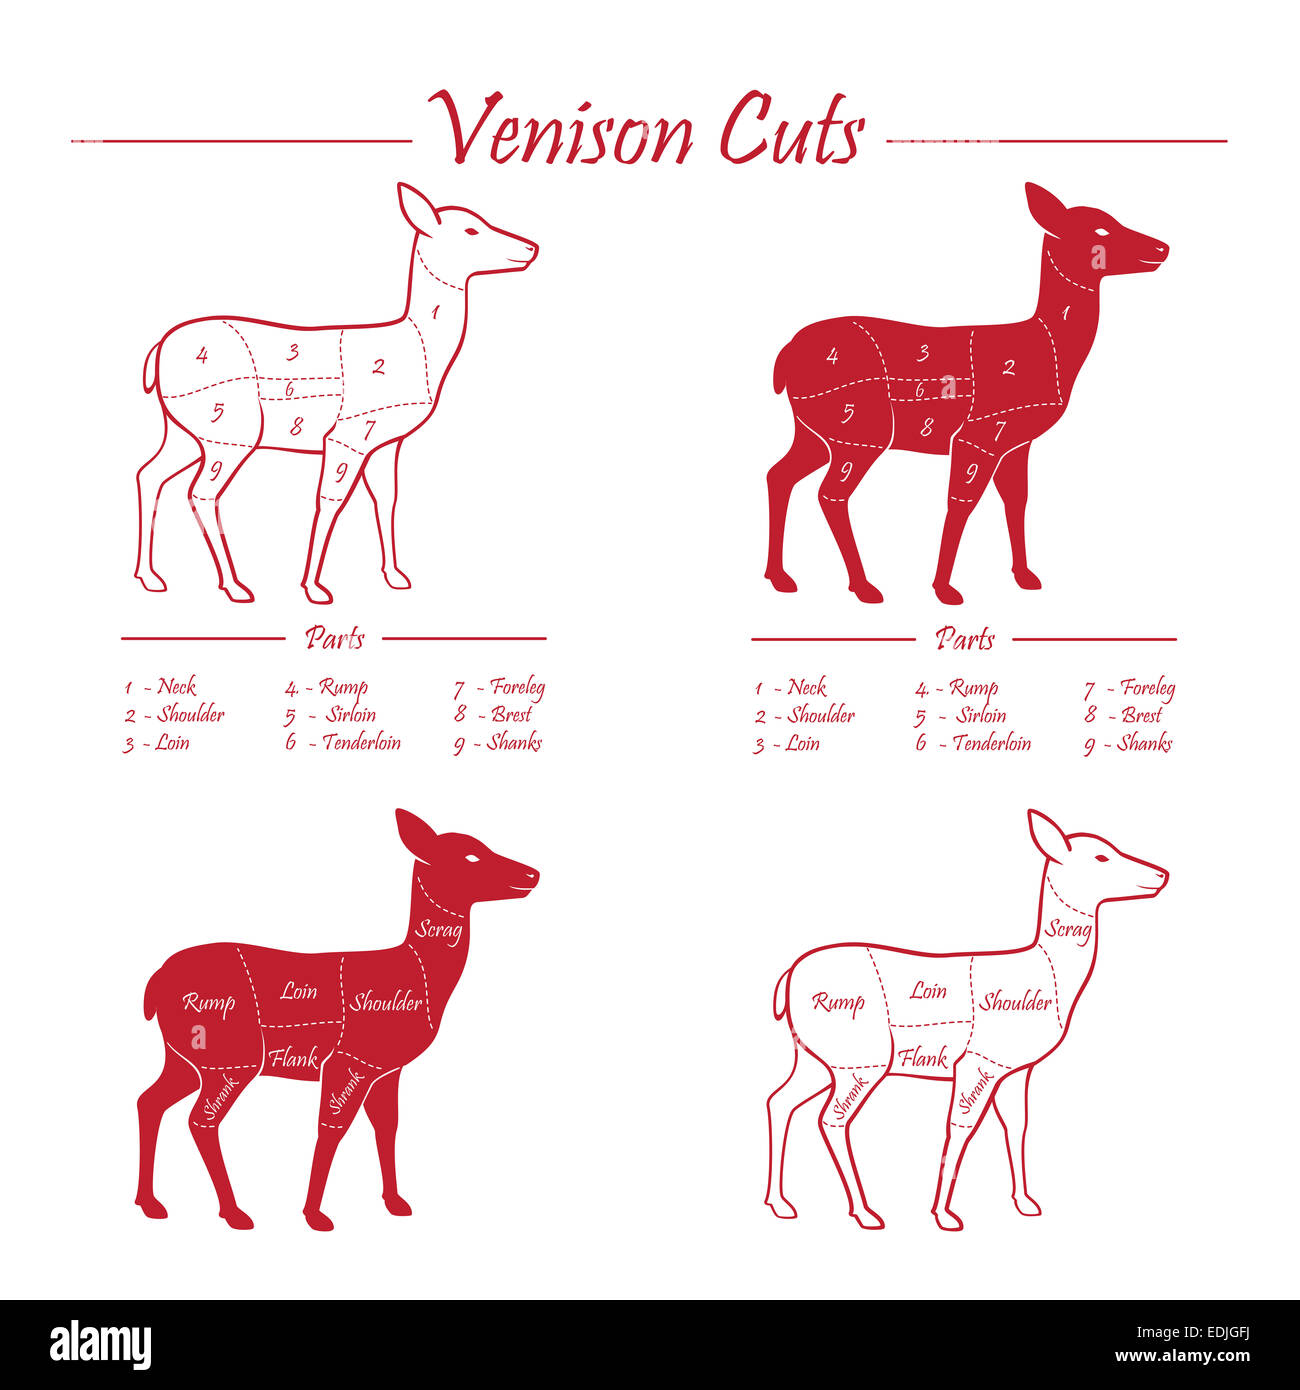 Venison meat cut diagram scheme - elements set on chalkboard Stock Photo